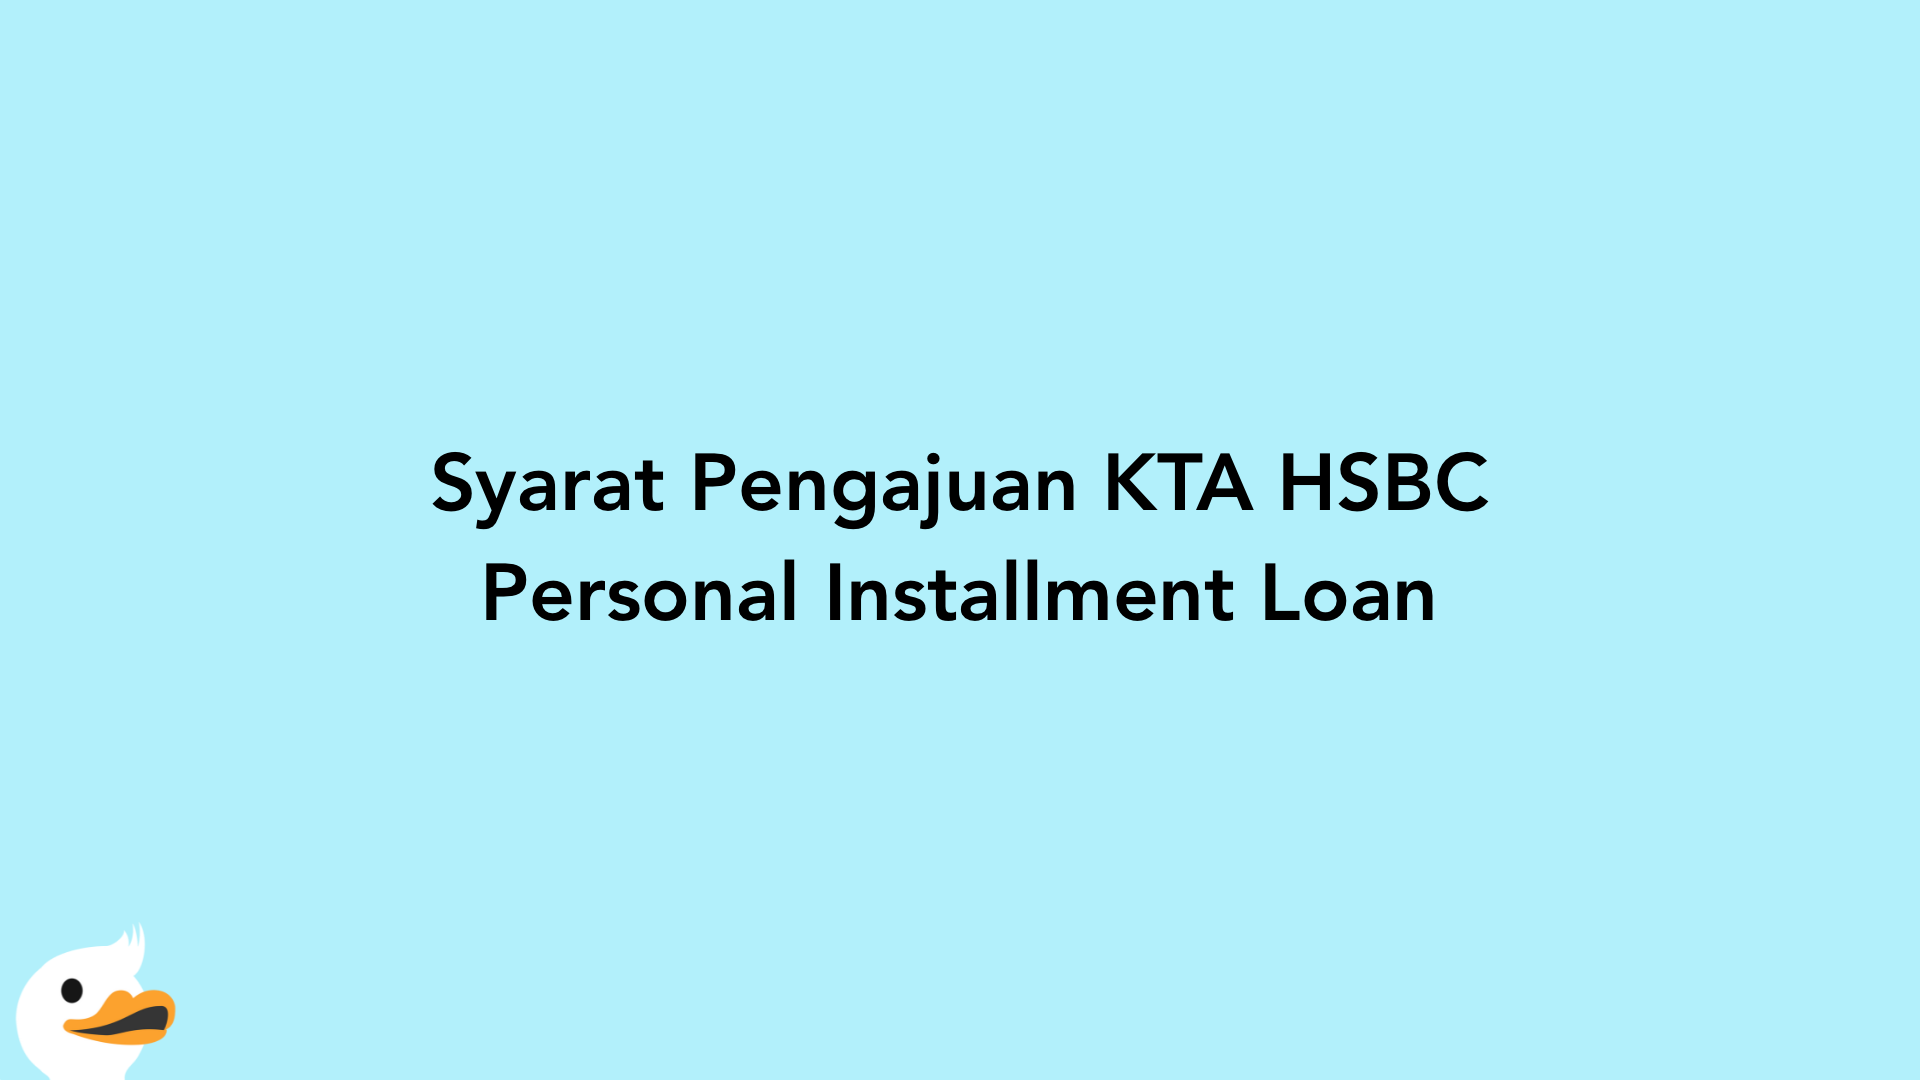 Syarat Pengajuan KTA HSBC Personal Installment Loan